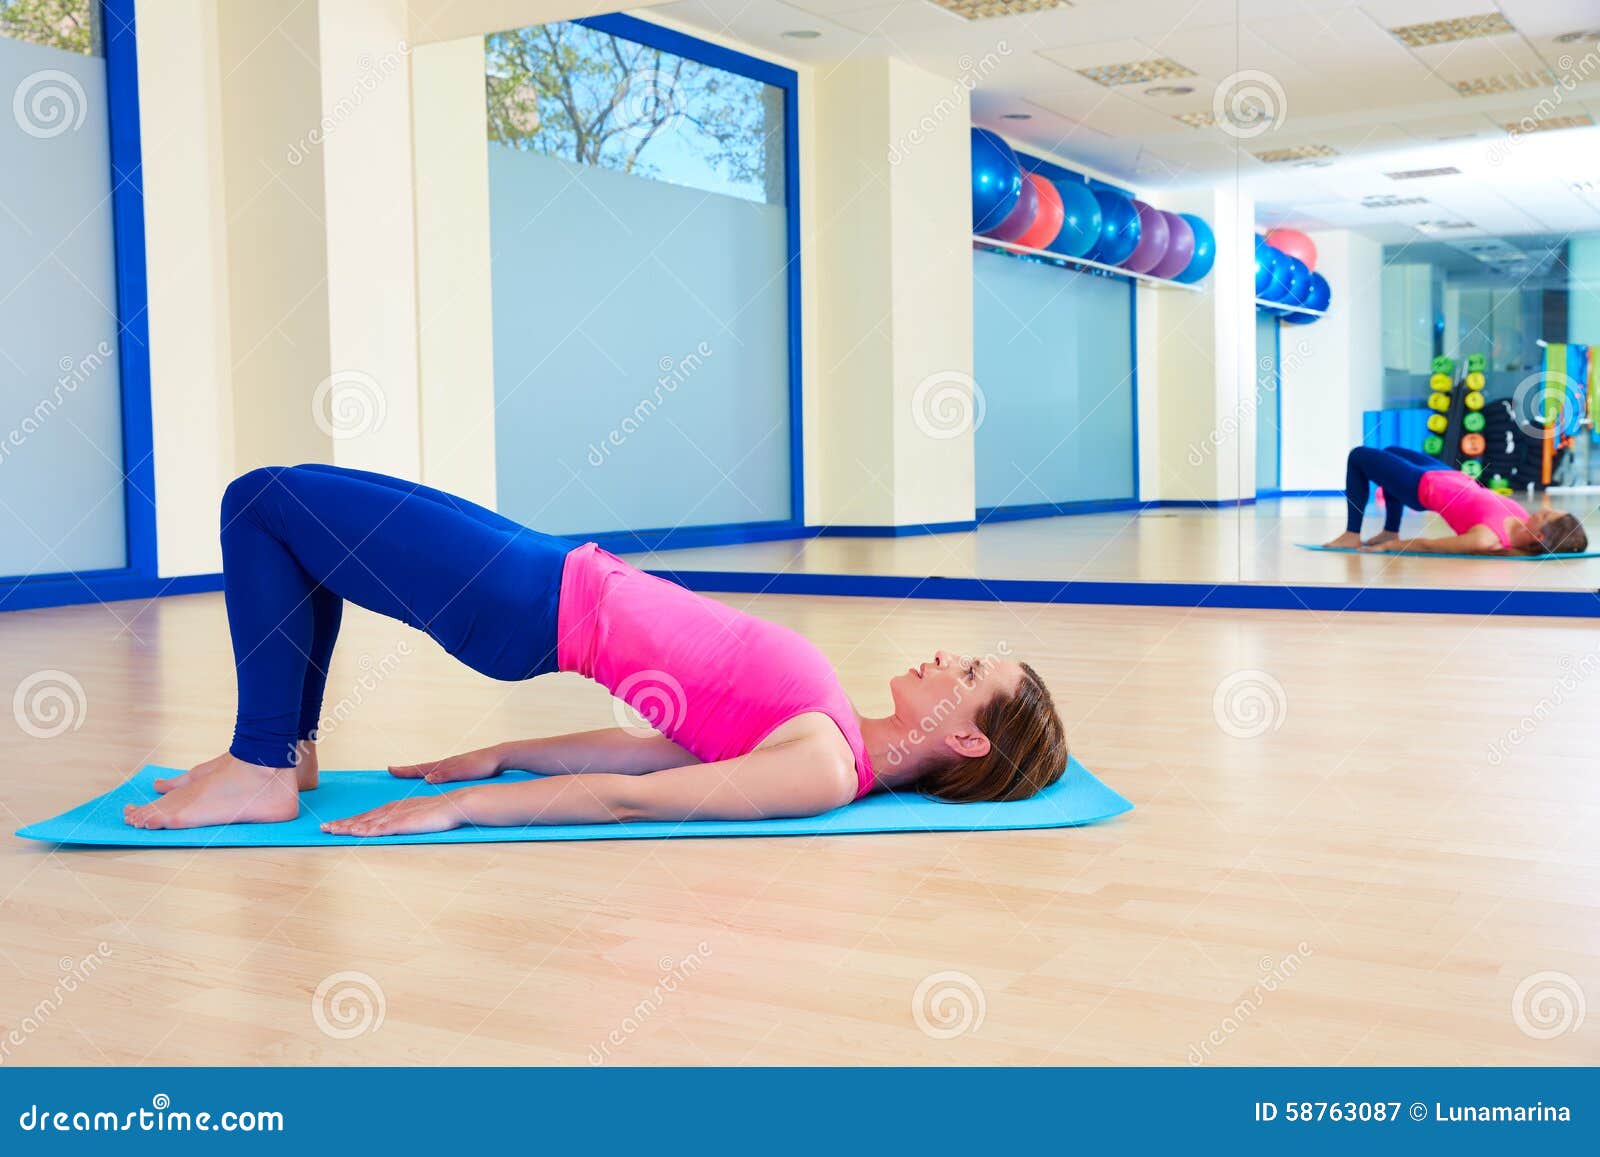 pilates woman shoulder bridge exercise workout